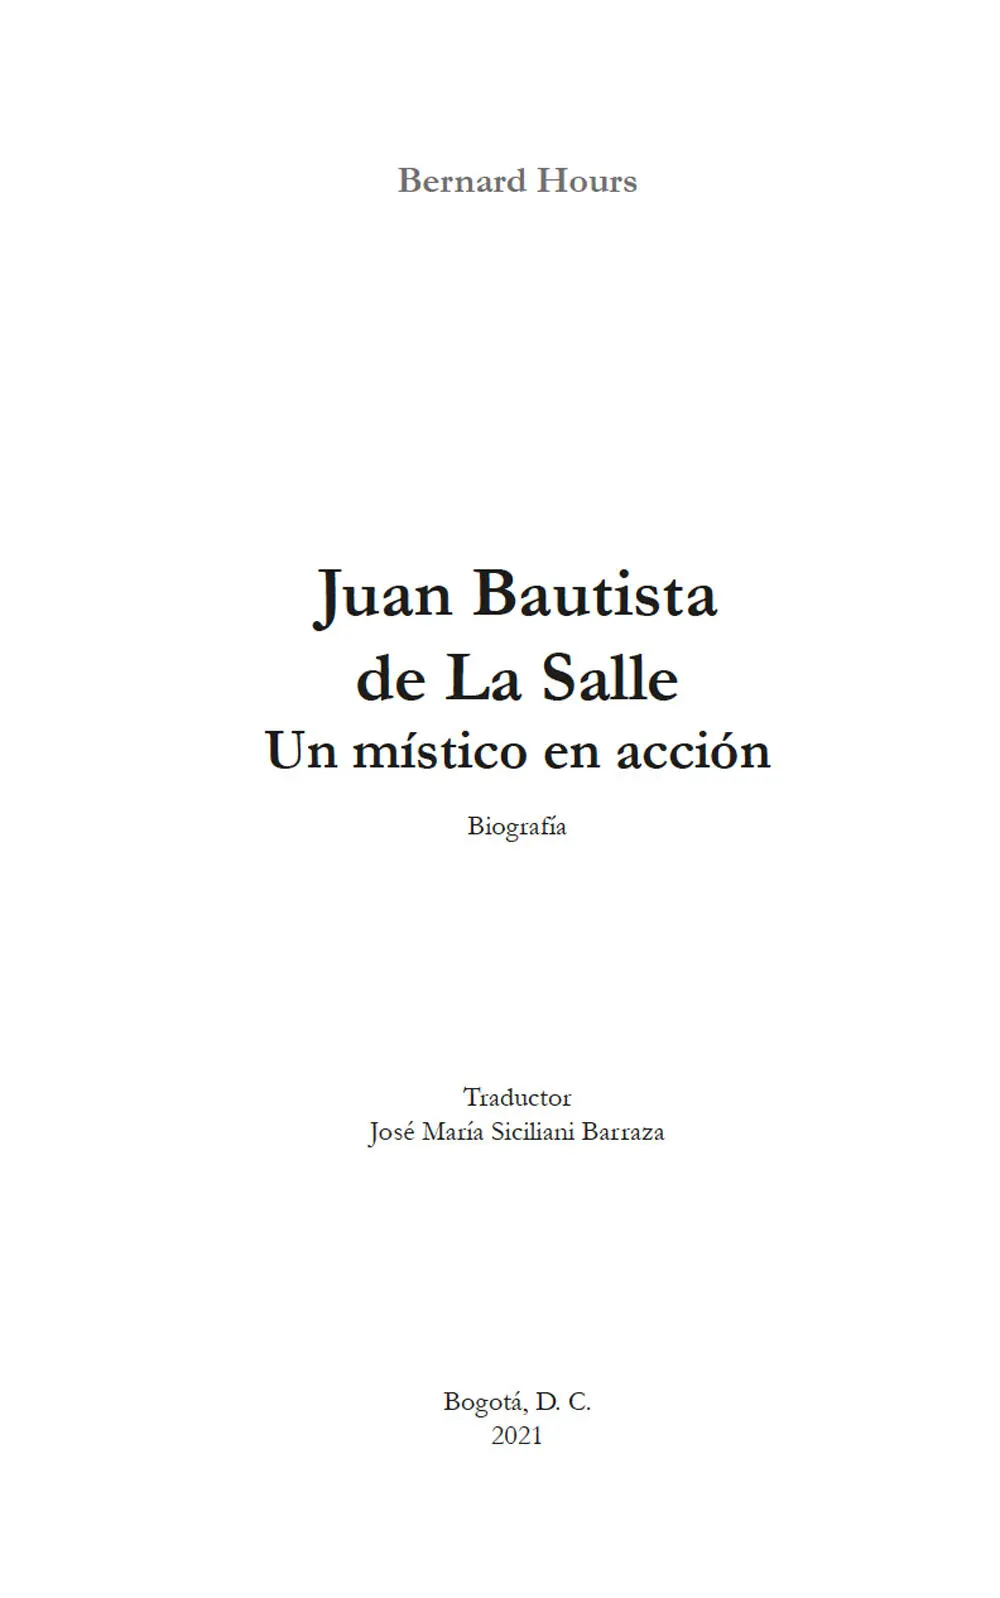 Hours Bernard 1959 Juan Bautista de La Salle un místico en acción - фото 2